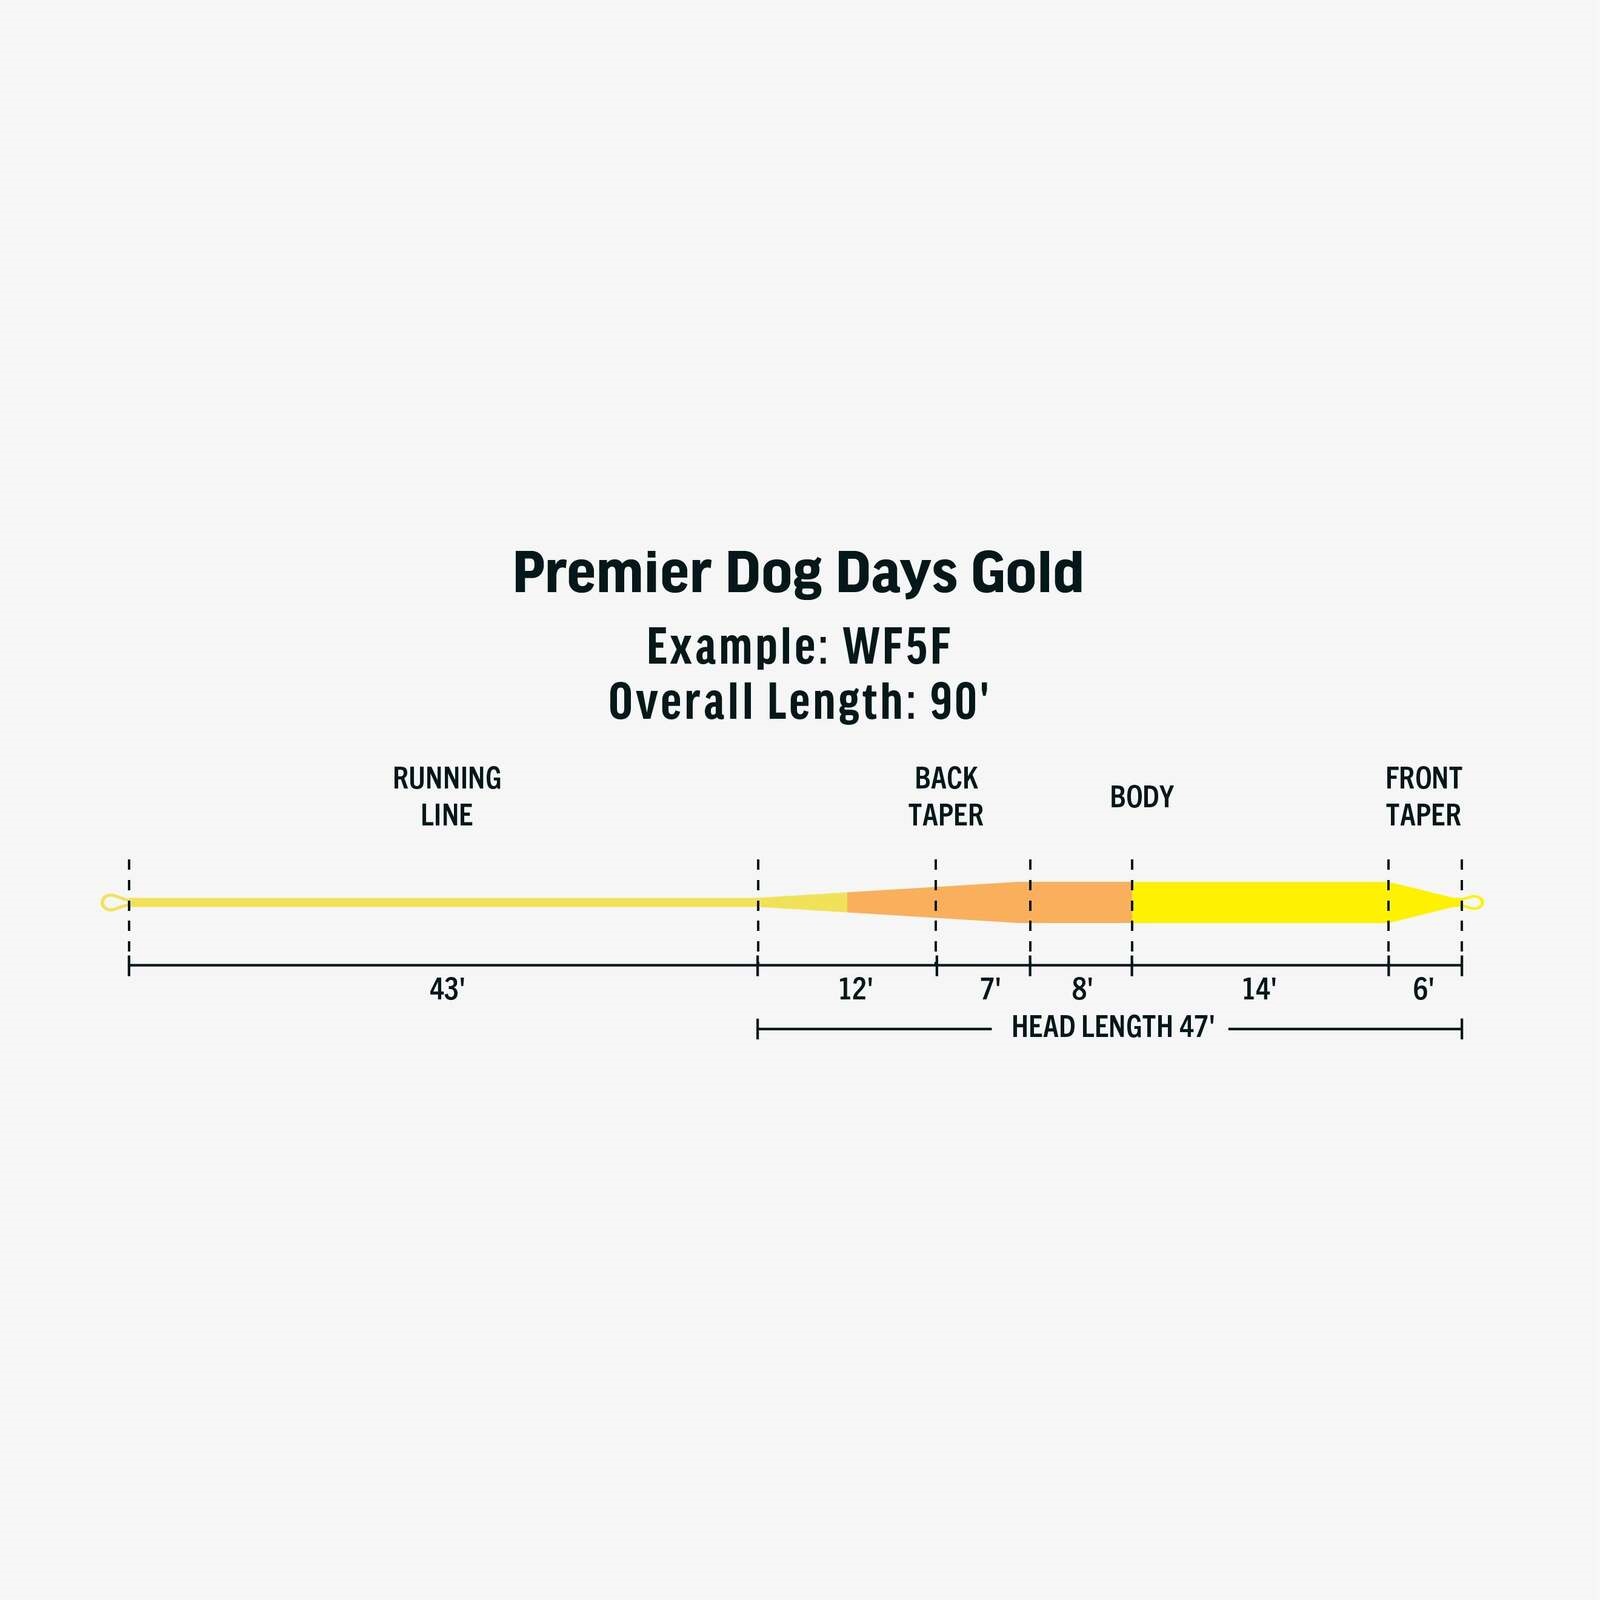 Premier Dog Days Gold